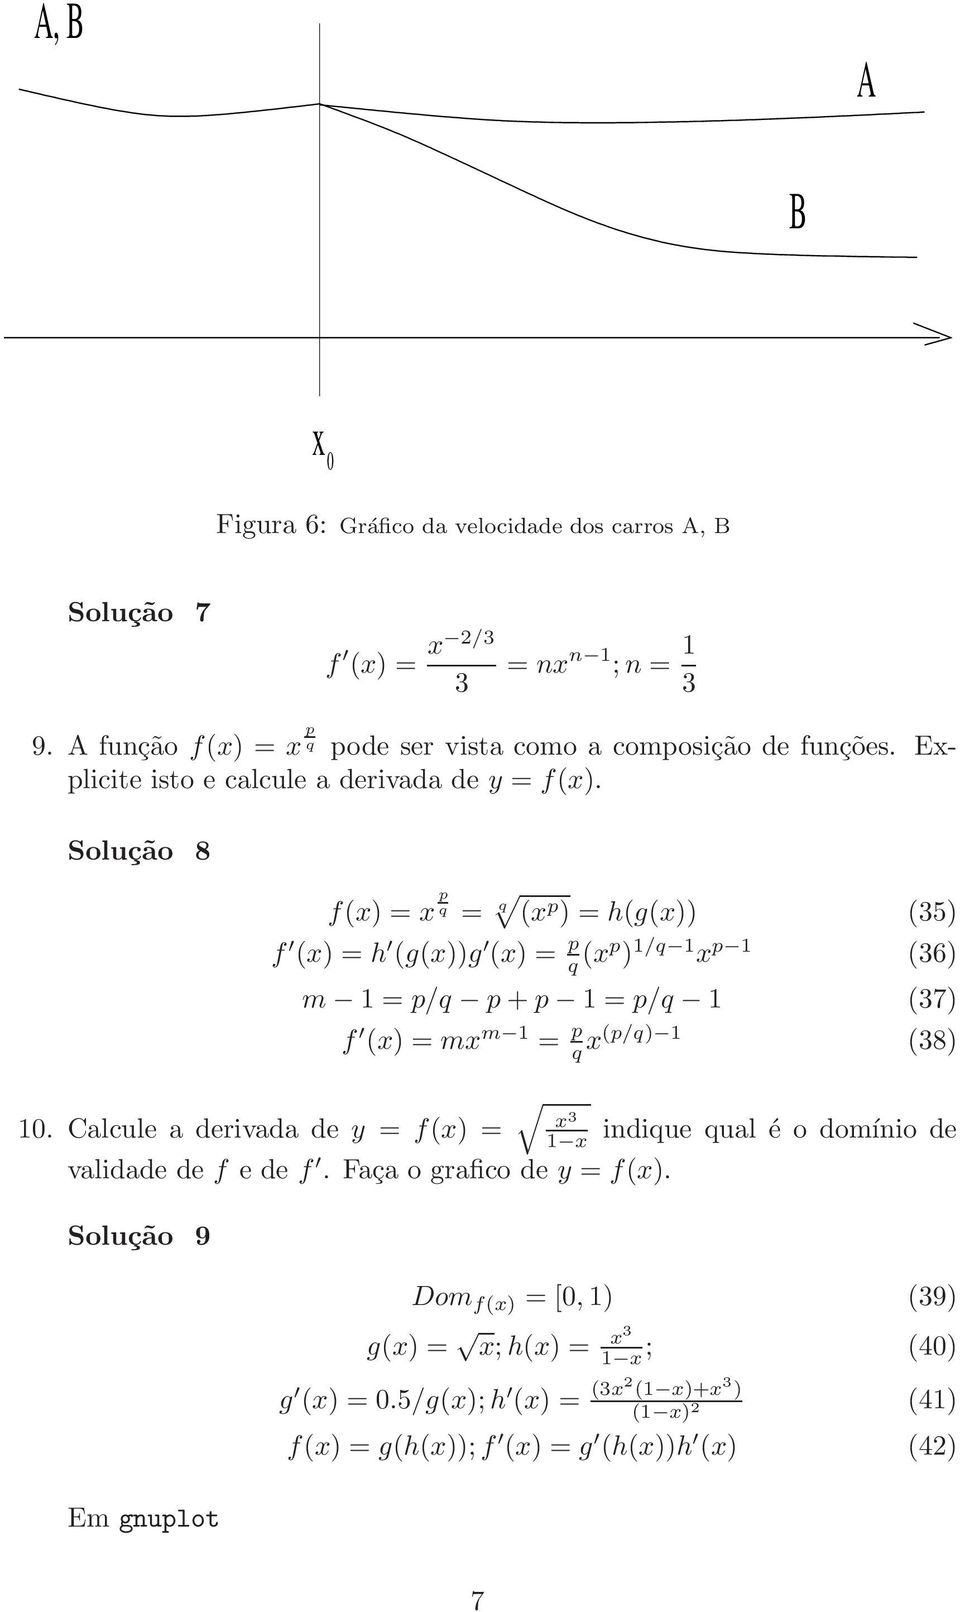 Calcule a derivada de y = f(x) = f(x) = x p q = q (x p ) = h(g(x)) (35) f (x) = h (g(x))g (x) = p q (xp ) /q x p (36) m = p/q p + p = p/q (37) f (x) = mx m = p q